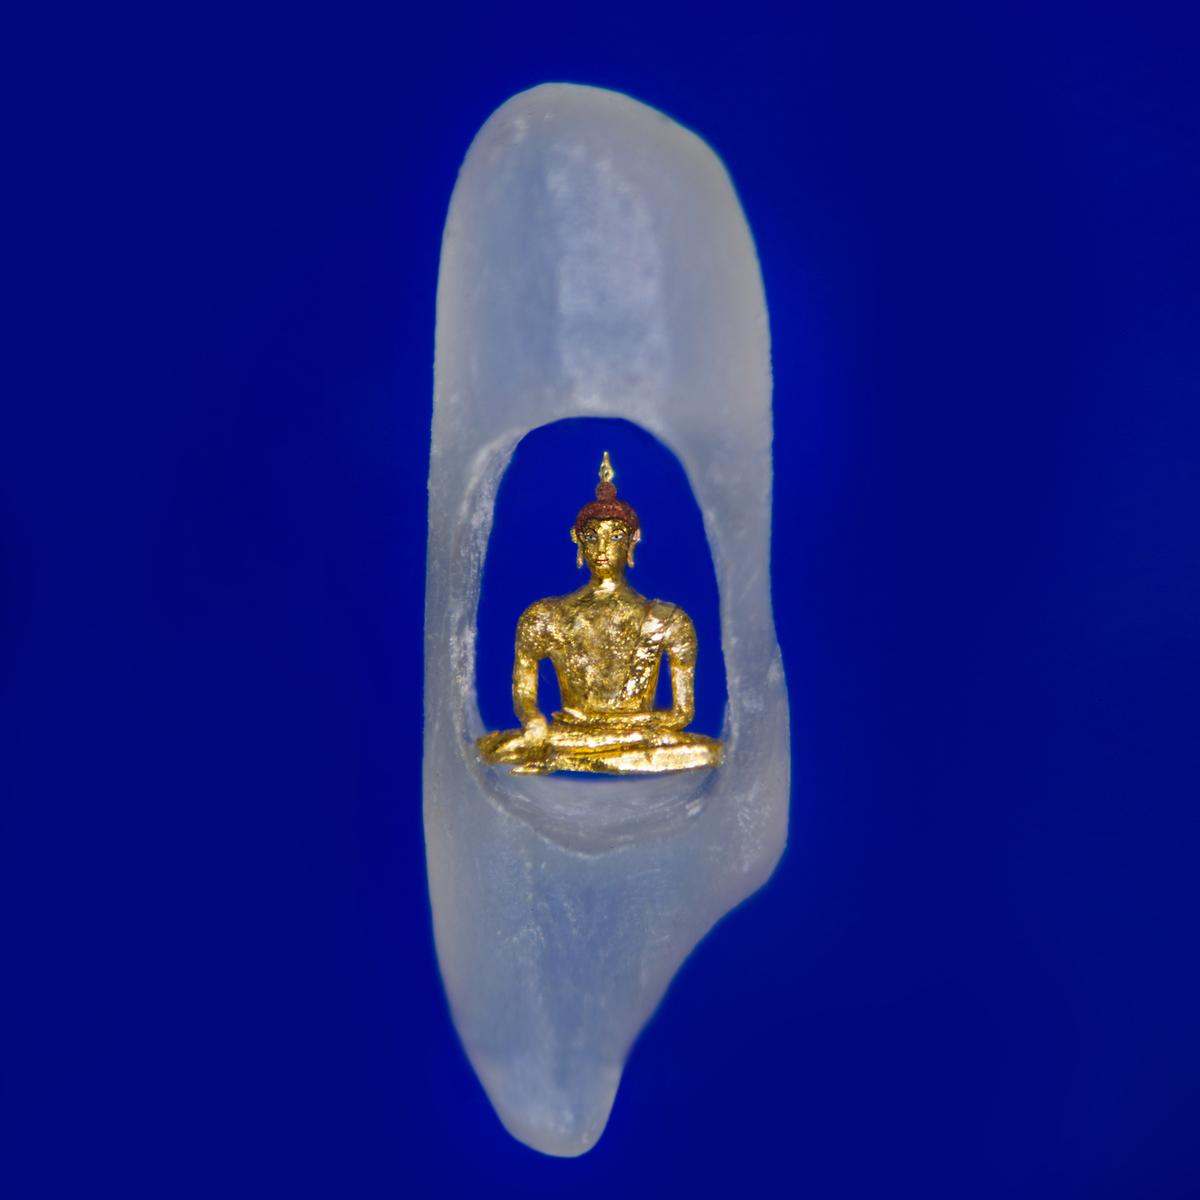 Gold Buddha. (Courtesy of <a href="https://www.willardwiganmbe.com/">Willard Wigan</a>)